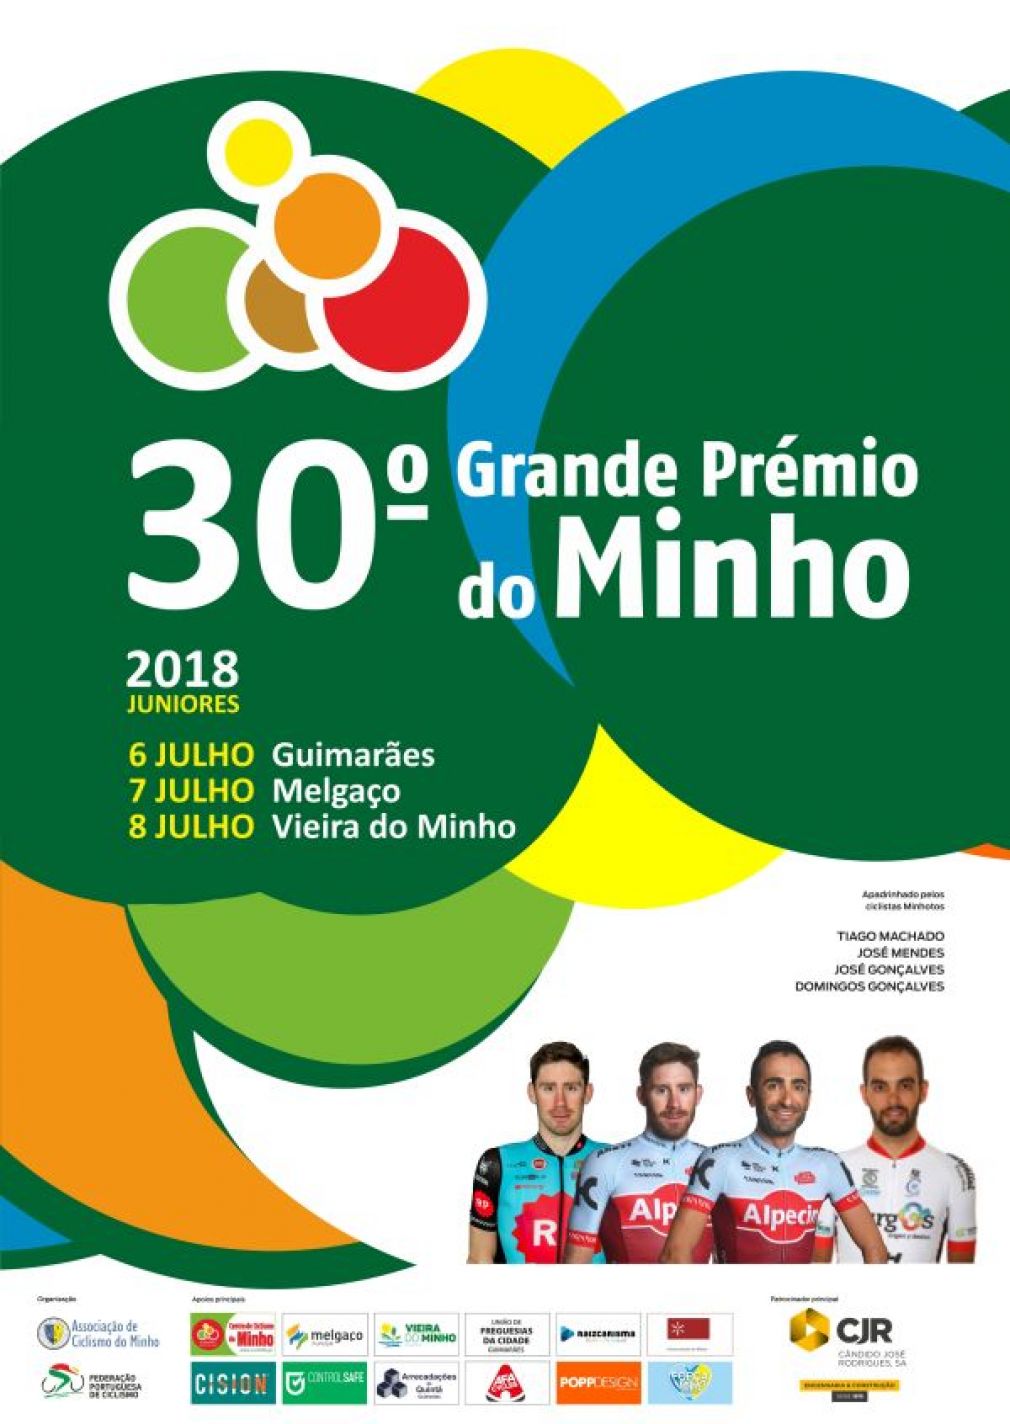 Tiago Machado, José Mendes, José Gonçalves e Domingos Gonçalves são padrinhos do Grande Prémio do Minho